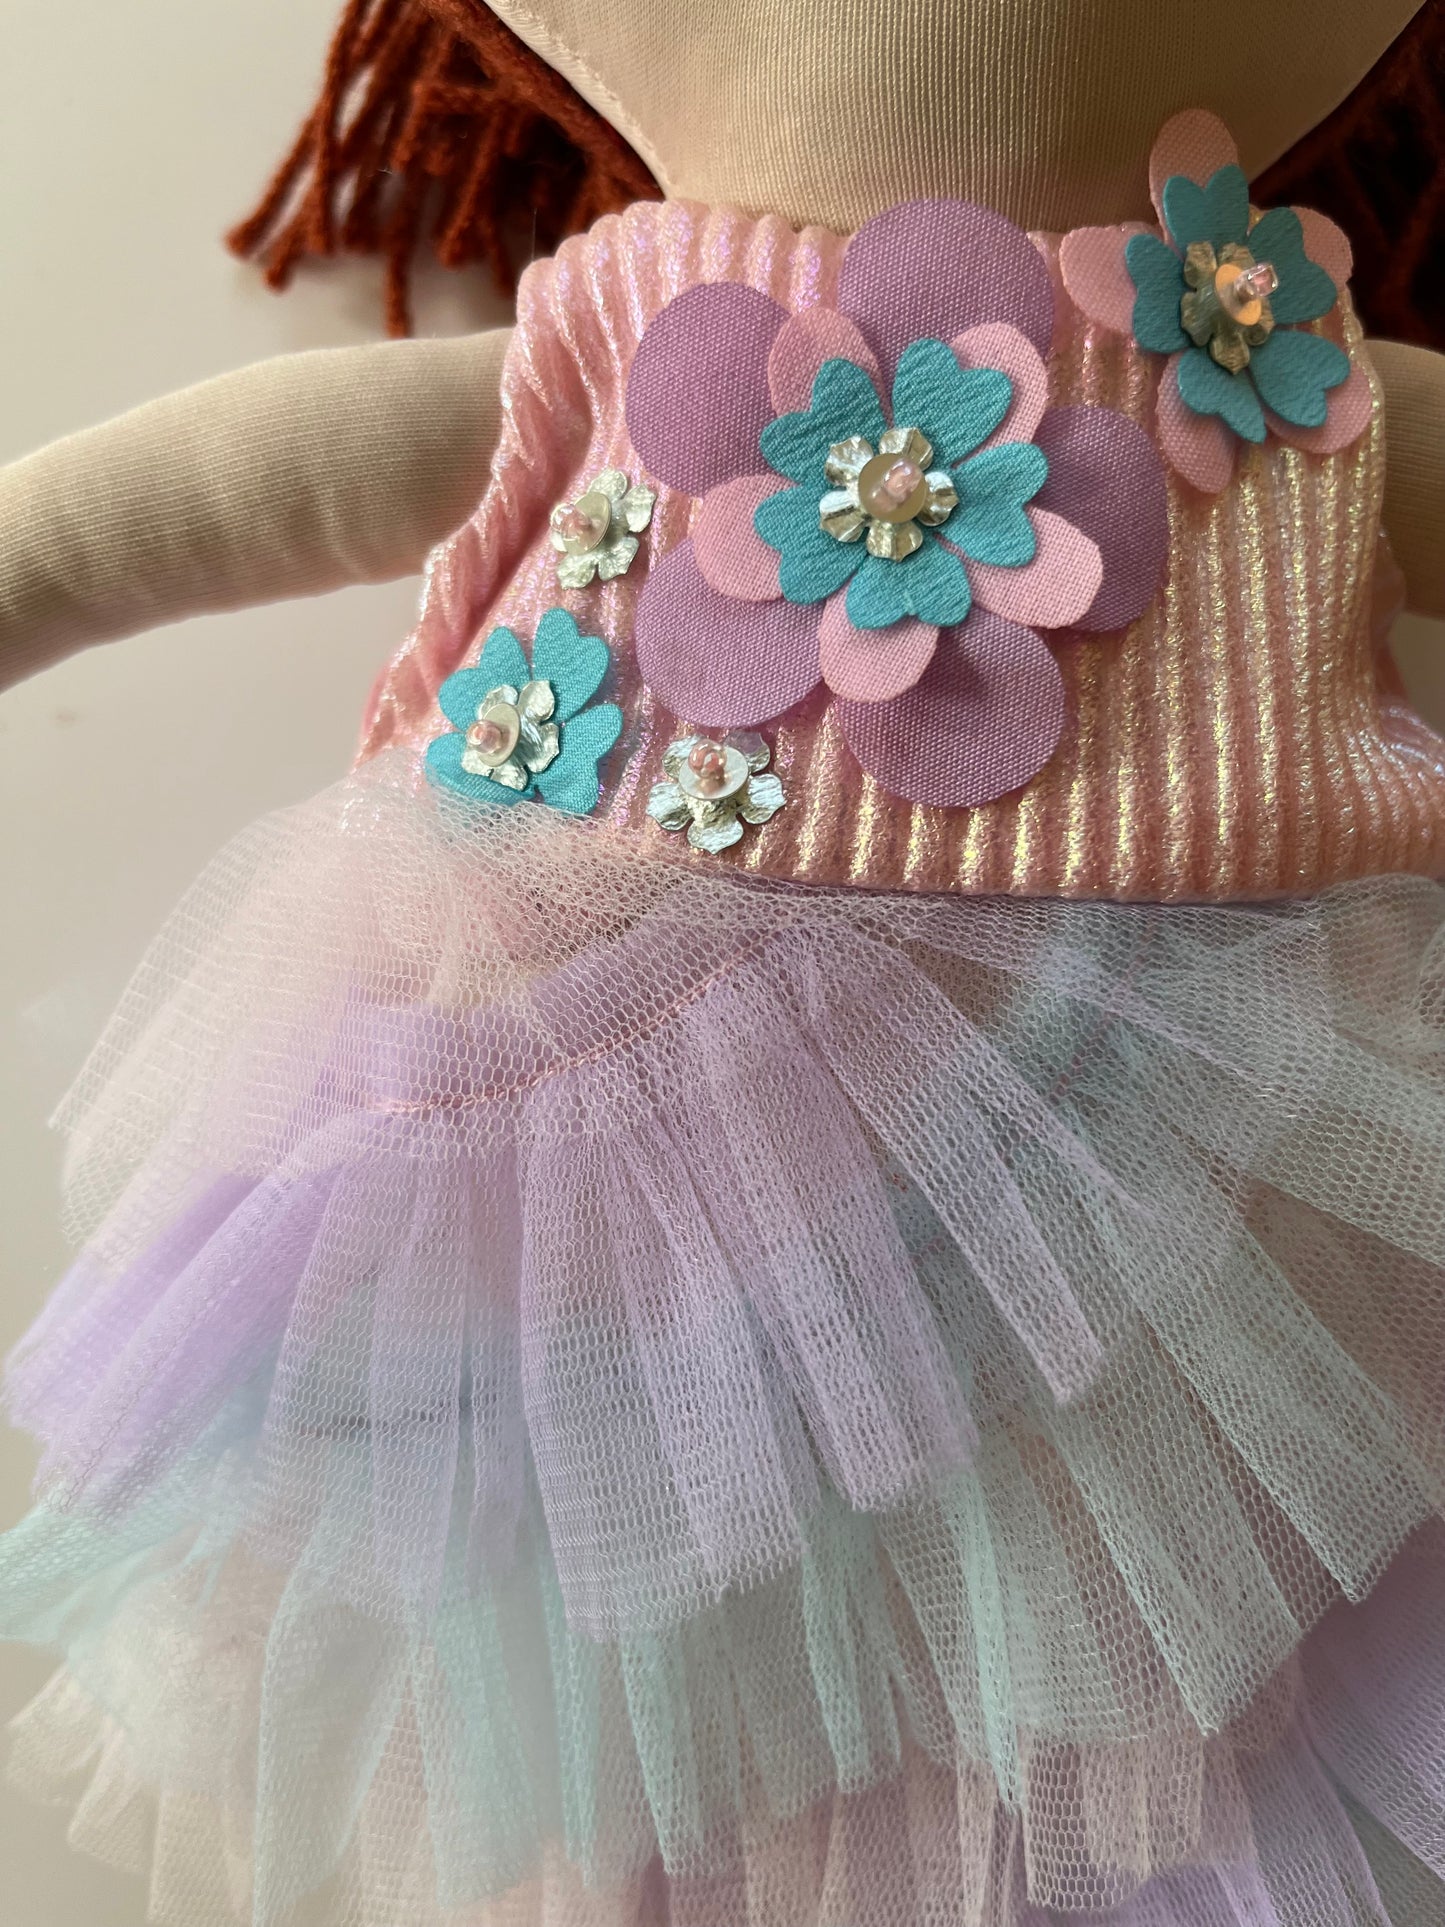 Whispering Lavender Dress & doll Set